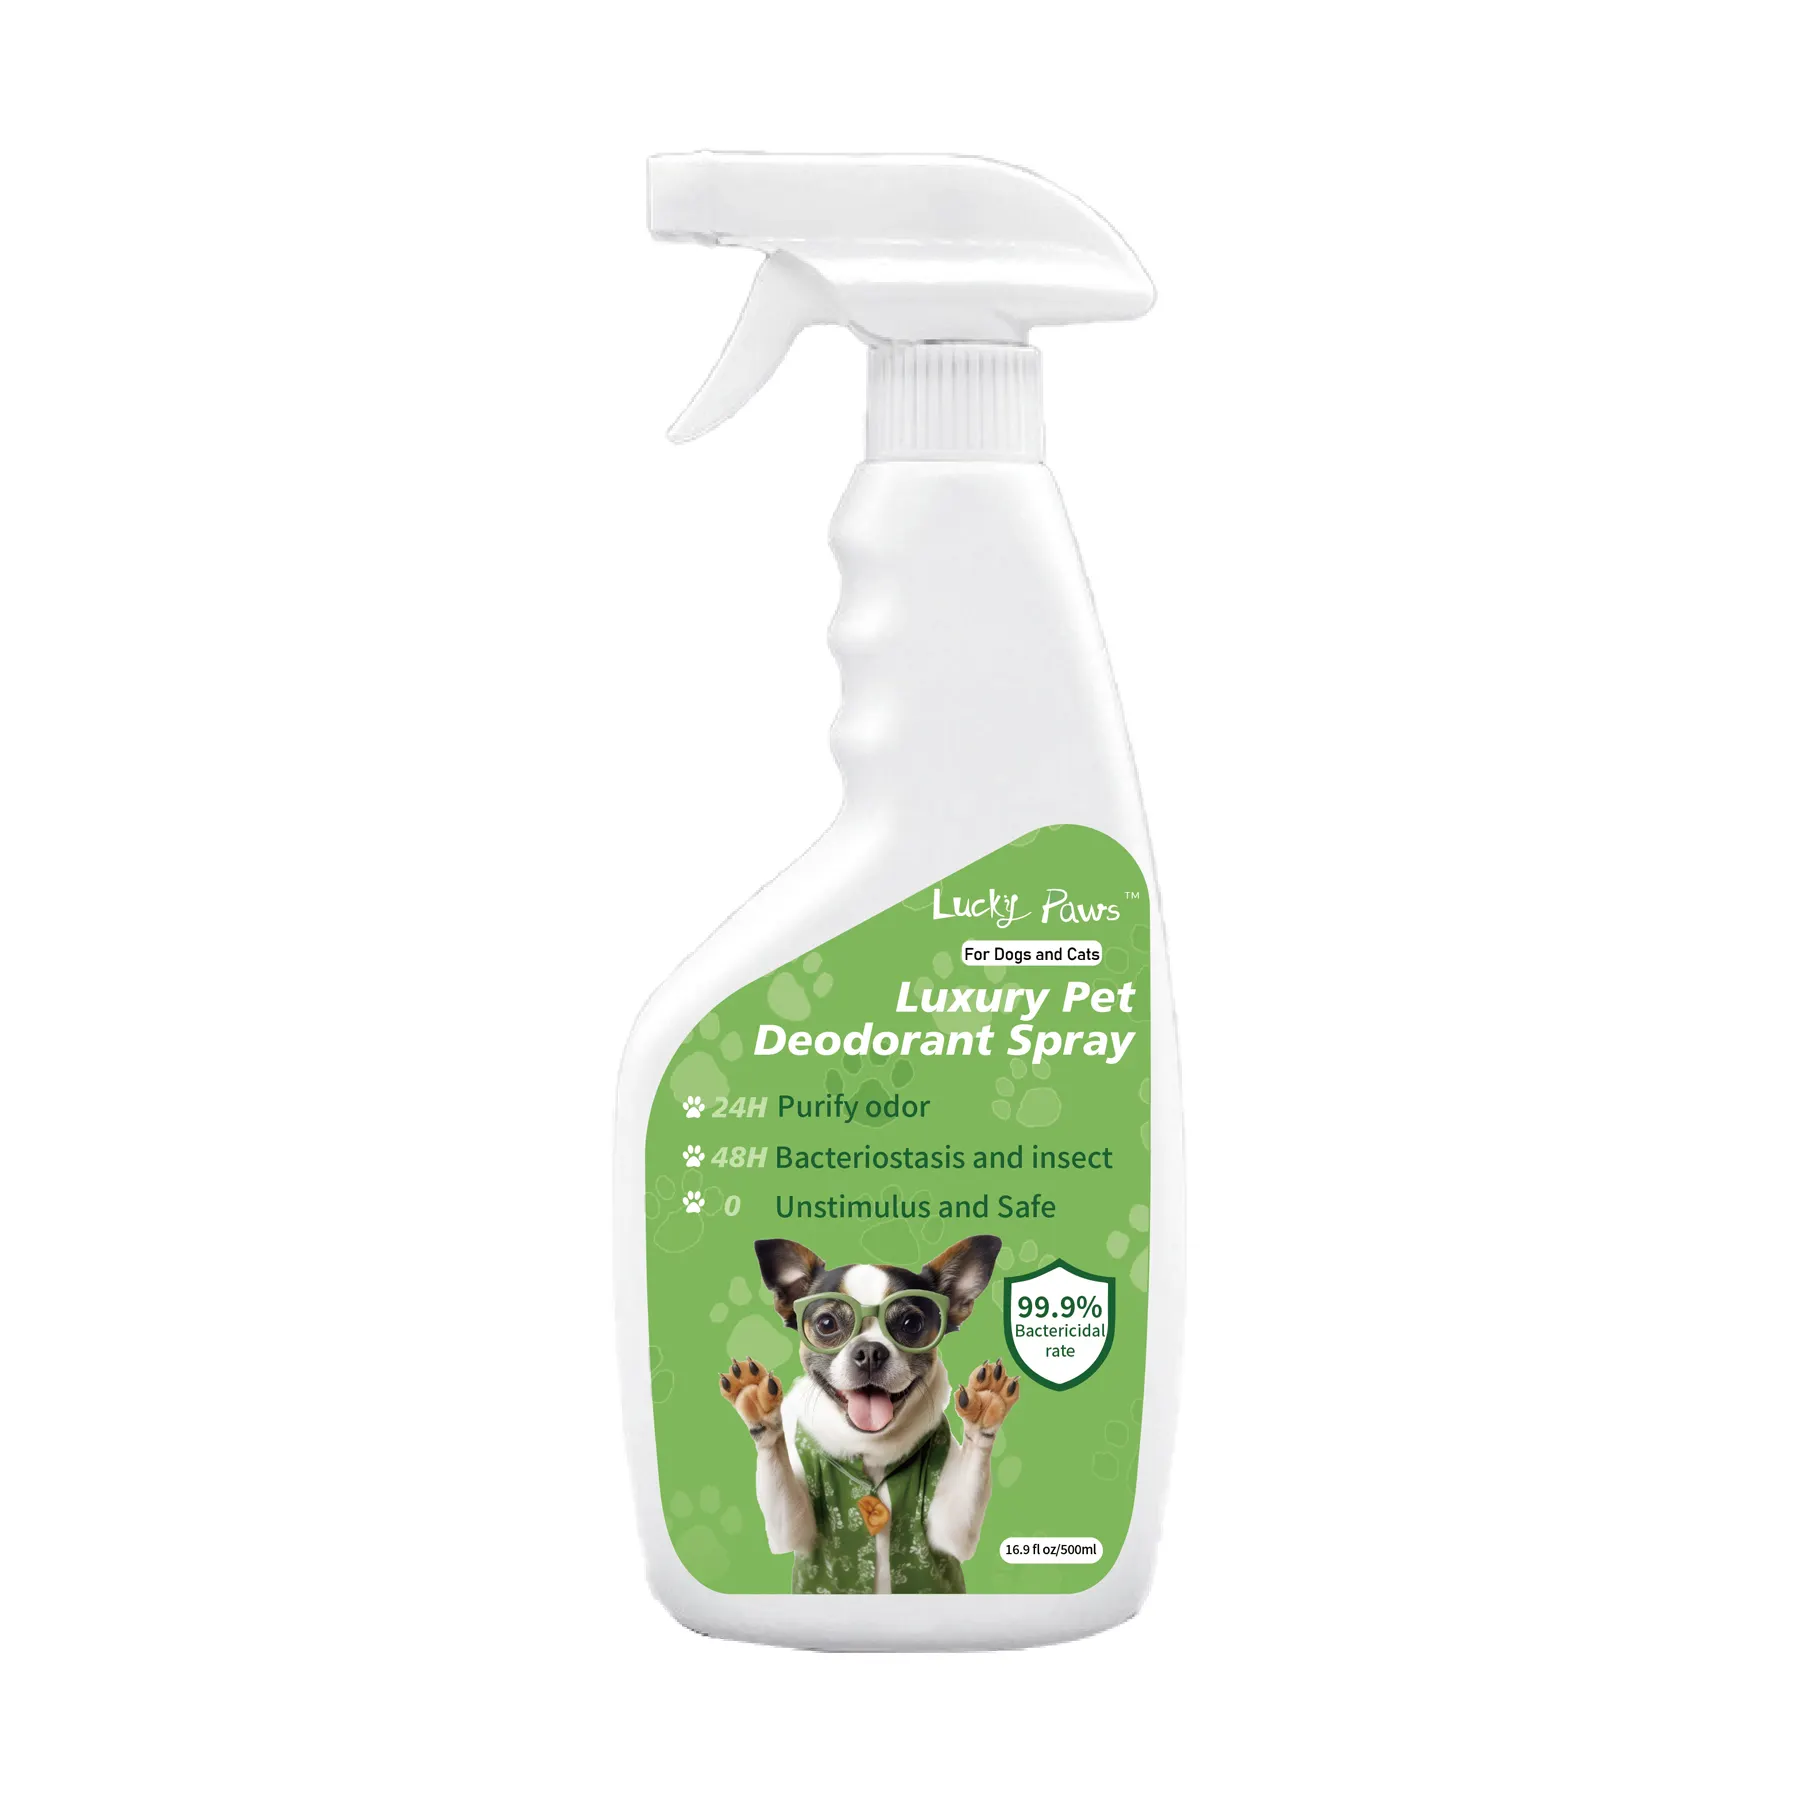 Lucky Paws Private Label ion négatif intelligent éliminateur d'odeurs pour animaux de compagnie désodorisant vaporisateur de parfum pour chien déodorant pour animaux de compagnie déodorant pour animaux de compagnie spay